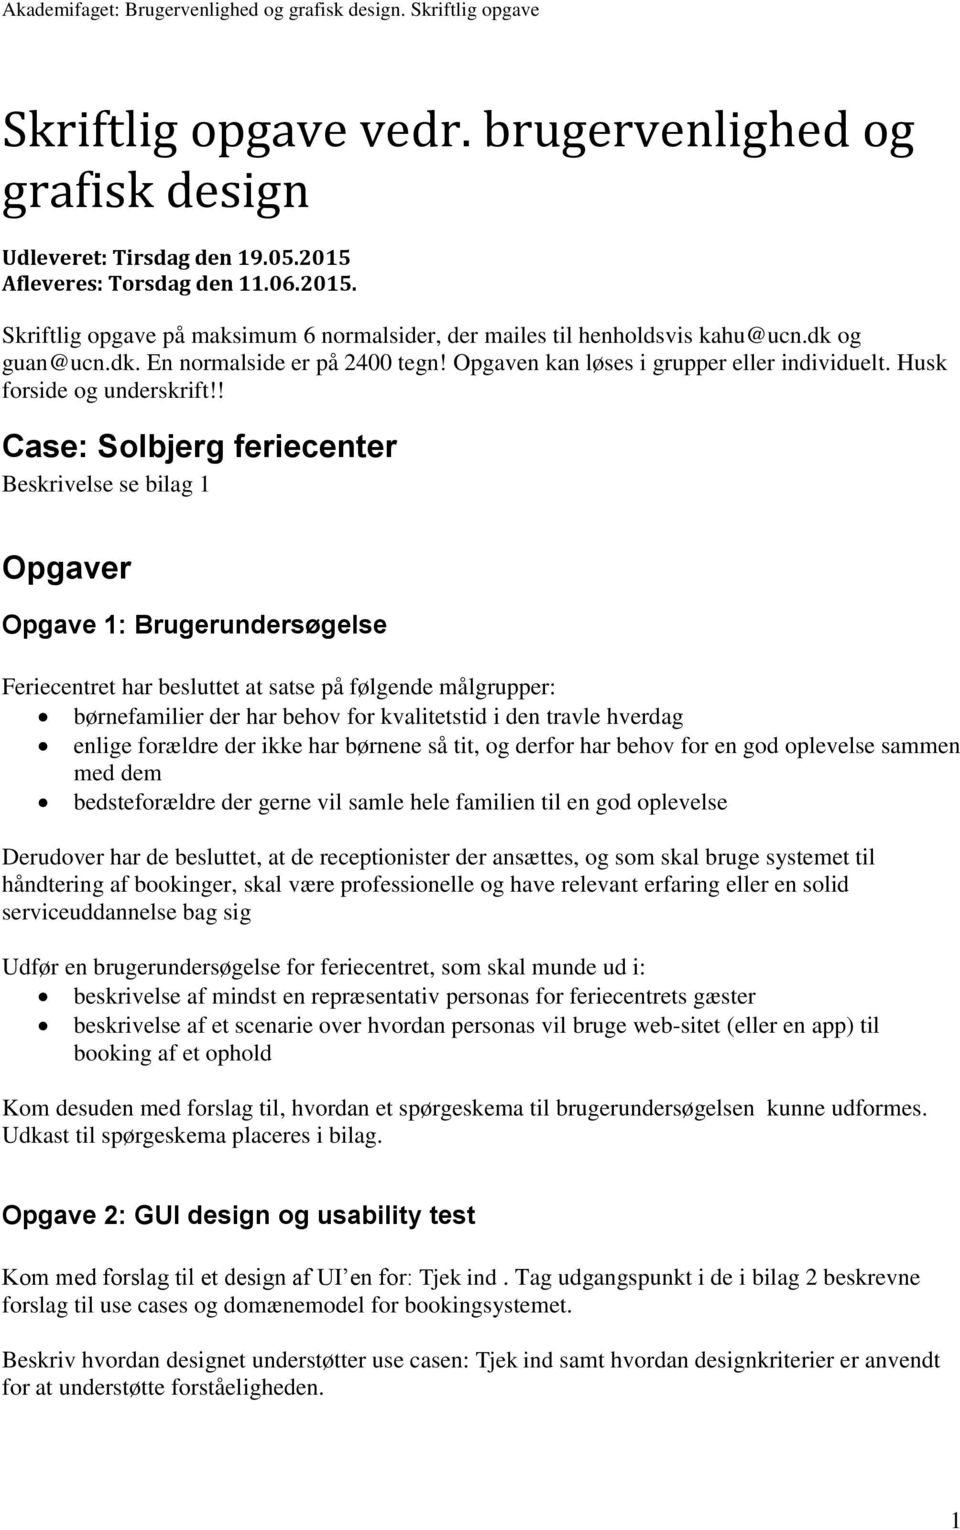 ! Case: Solbjerg feriecenter Beskrivelse se bilag 1 Opgaver Opgave 1: Brugerundersøgelse Feriecentret har besluttet at satse på følgende målgrupper: børnefamilier der har behov for kvalitetstid i den